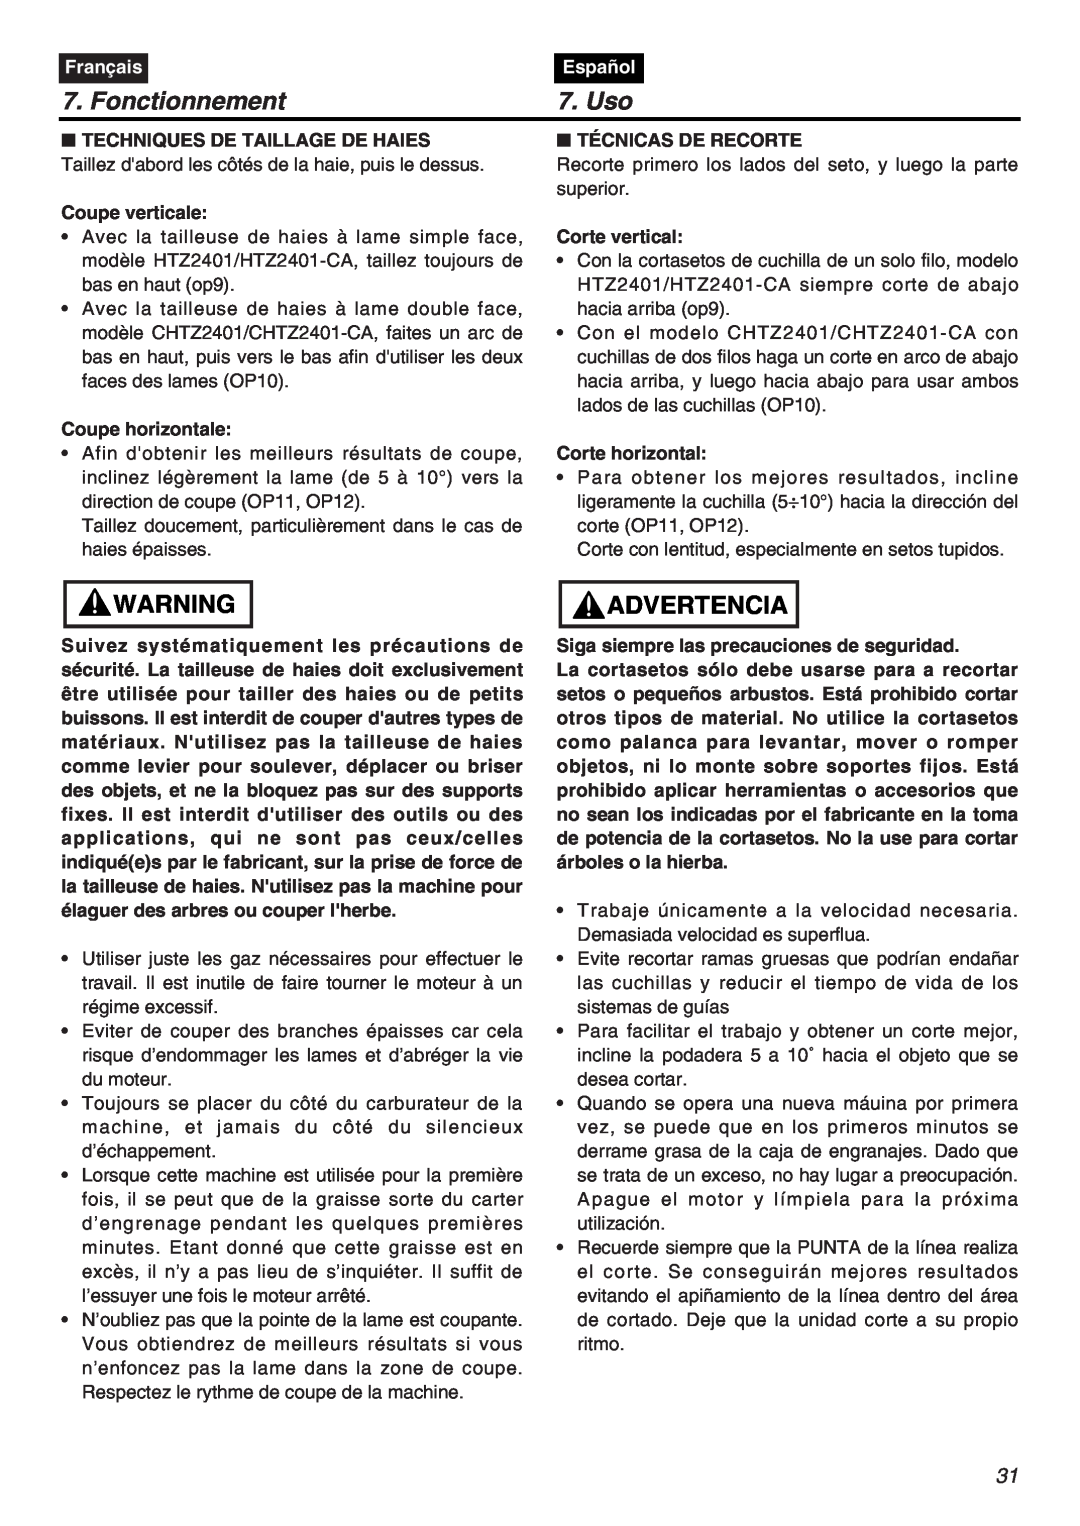 Zenoah HTZ2401-CA, CHTZ2401L manual Fonctionnement, Uso, Advertencia, Français, Español 